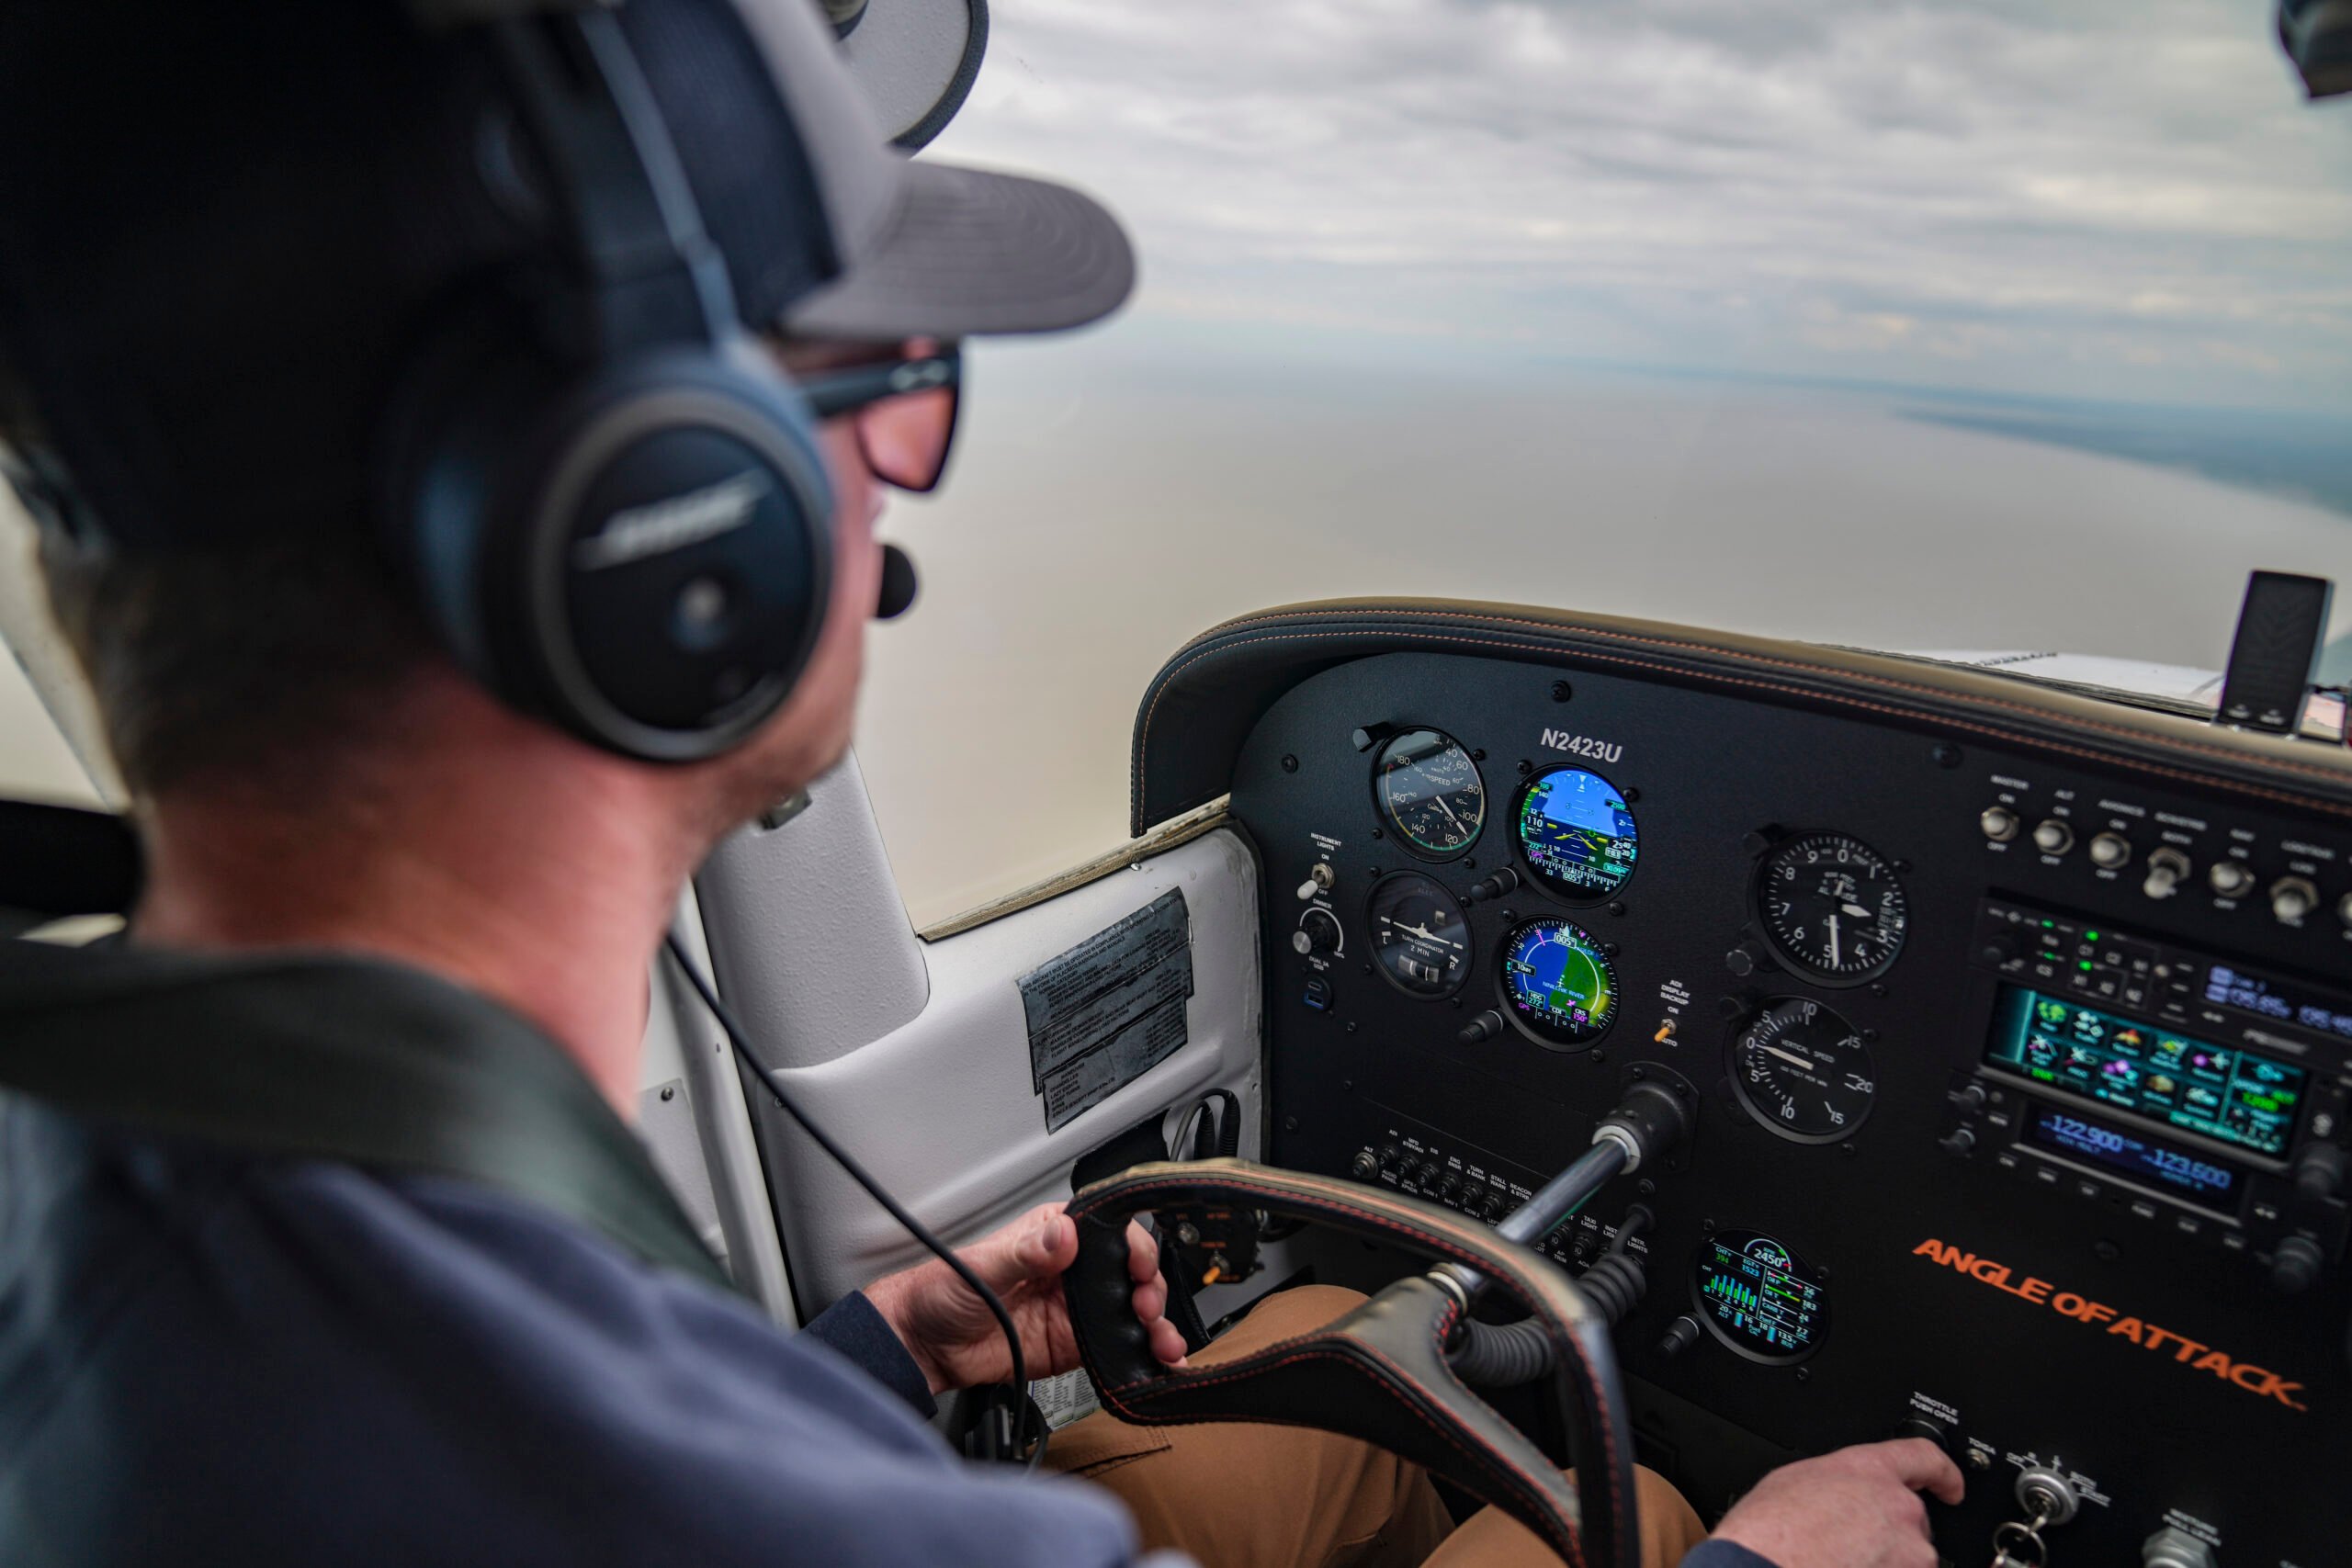 A pilot activates Garmin Autoland to autonomously land the plane.